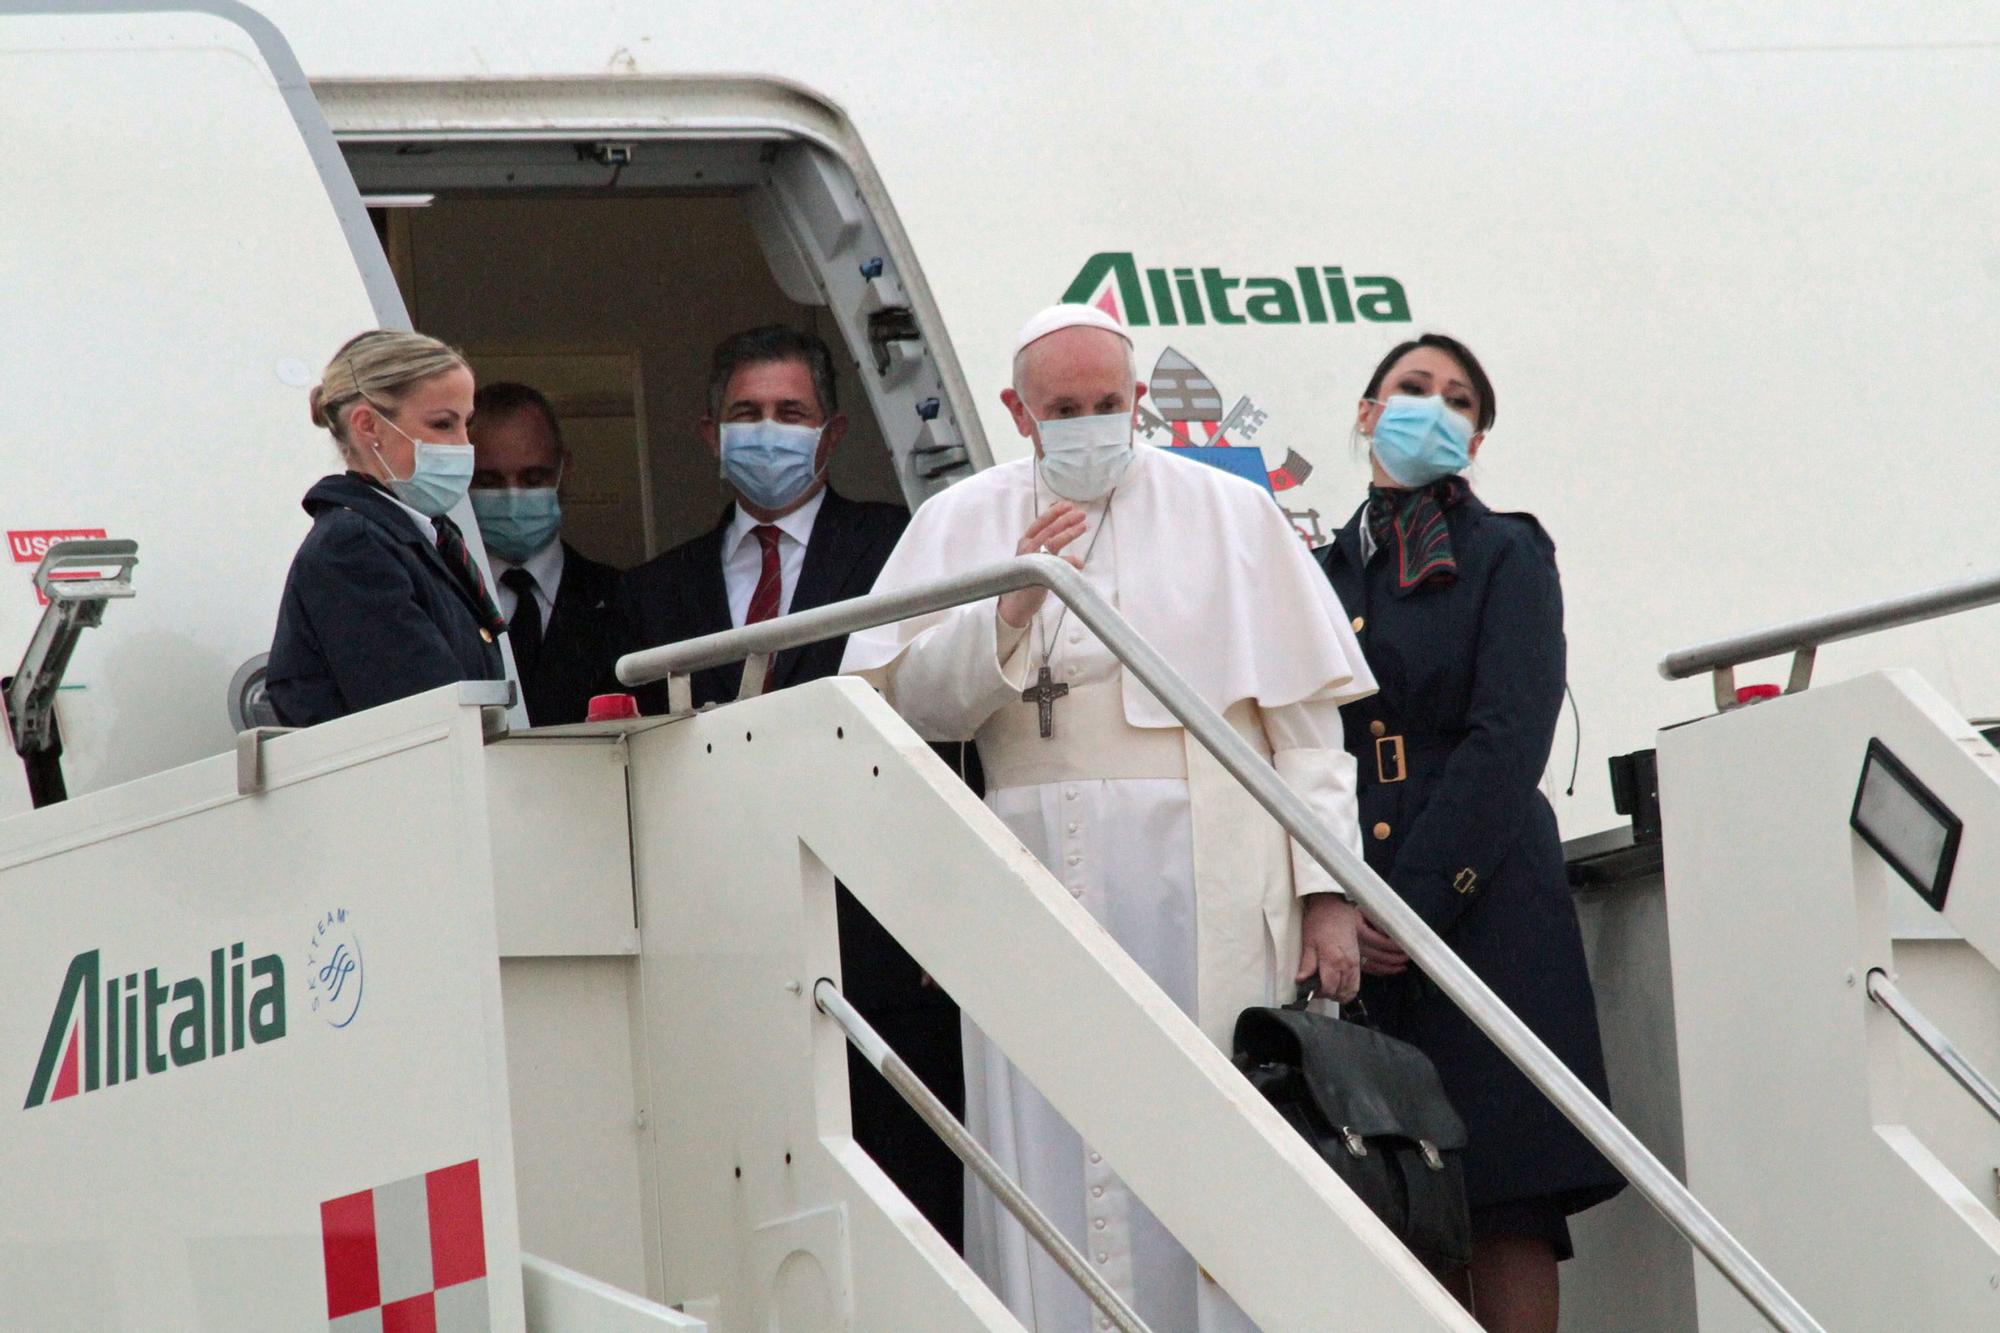 El papa Francisco realiza una visita de tres días a Irak